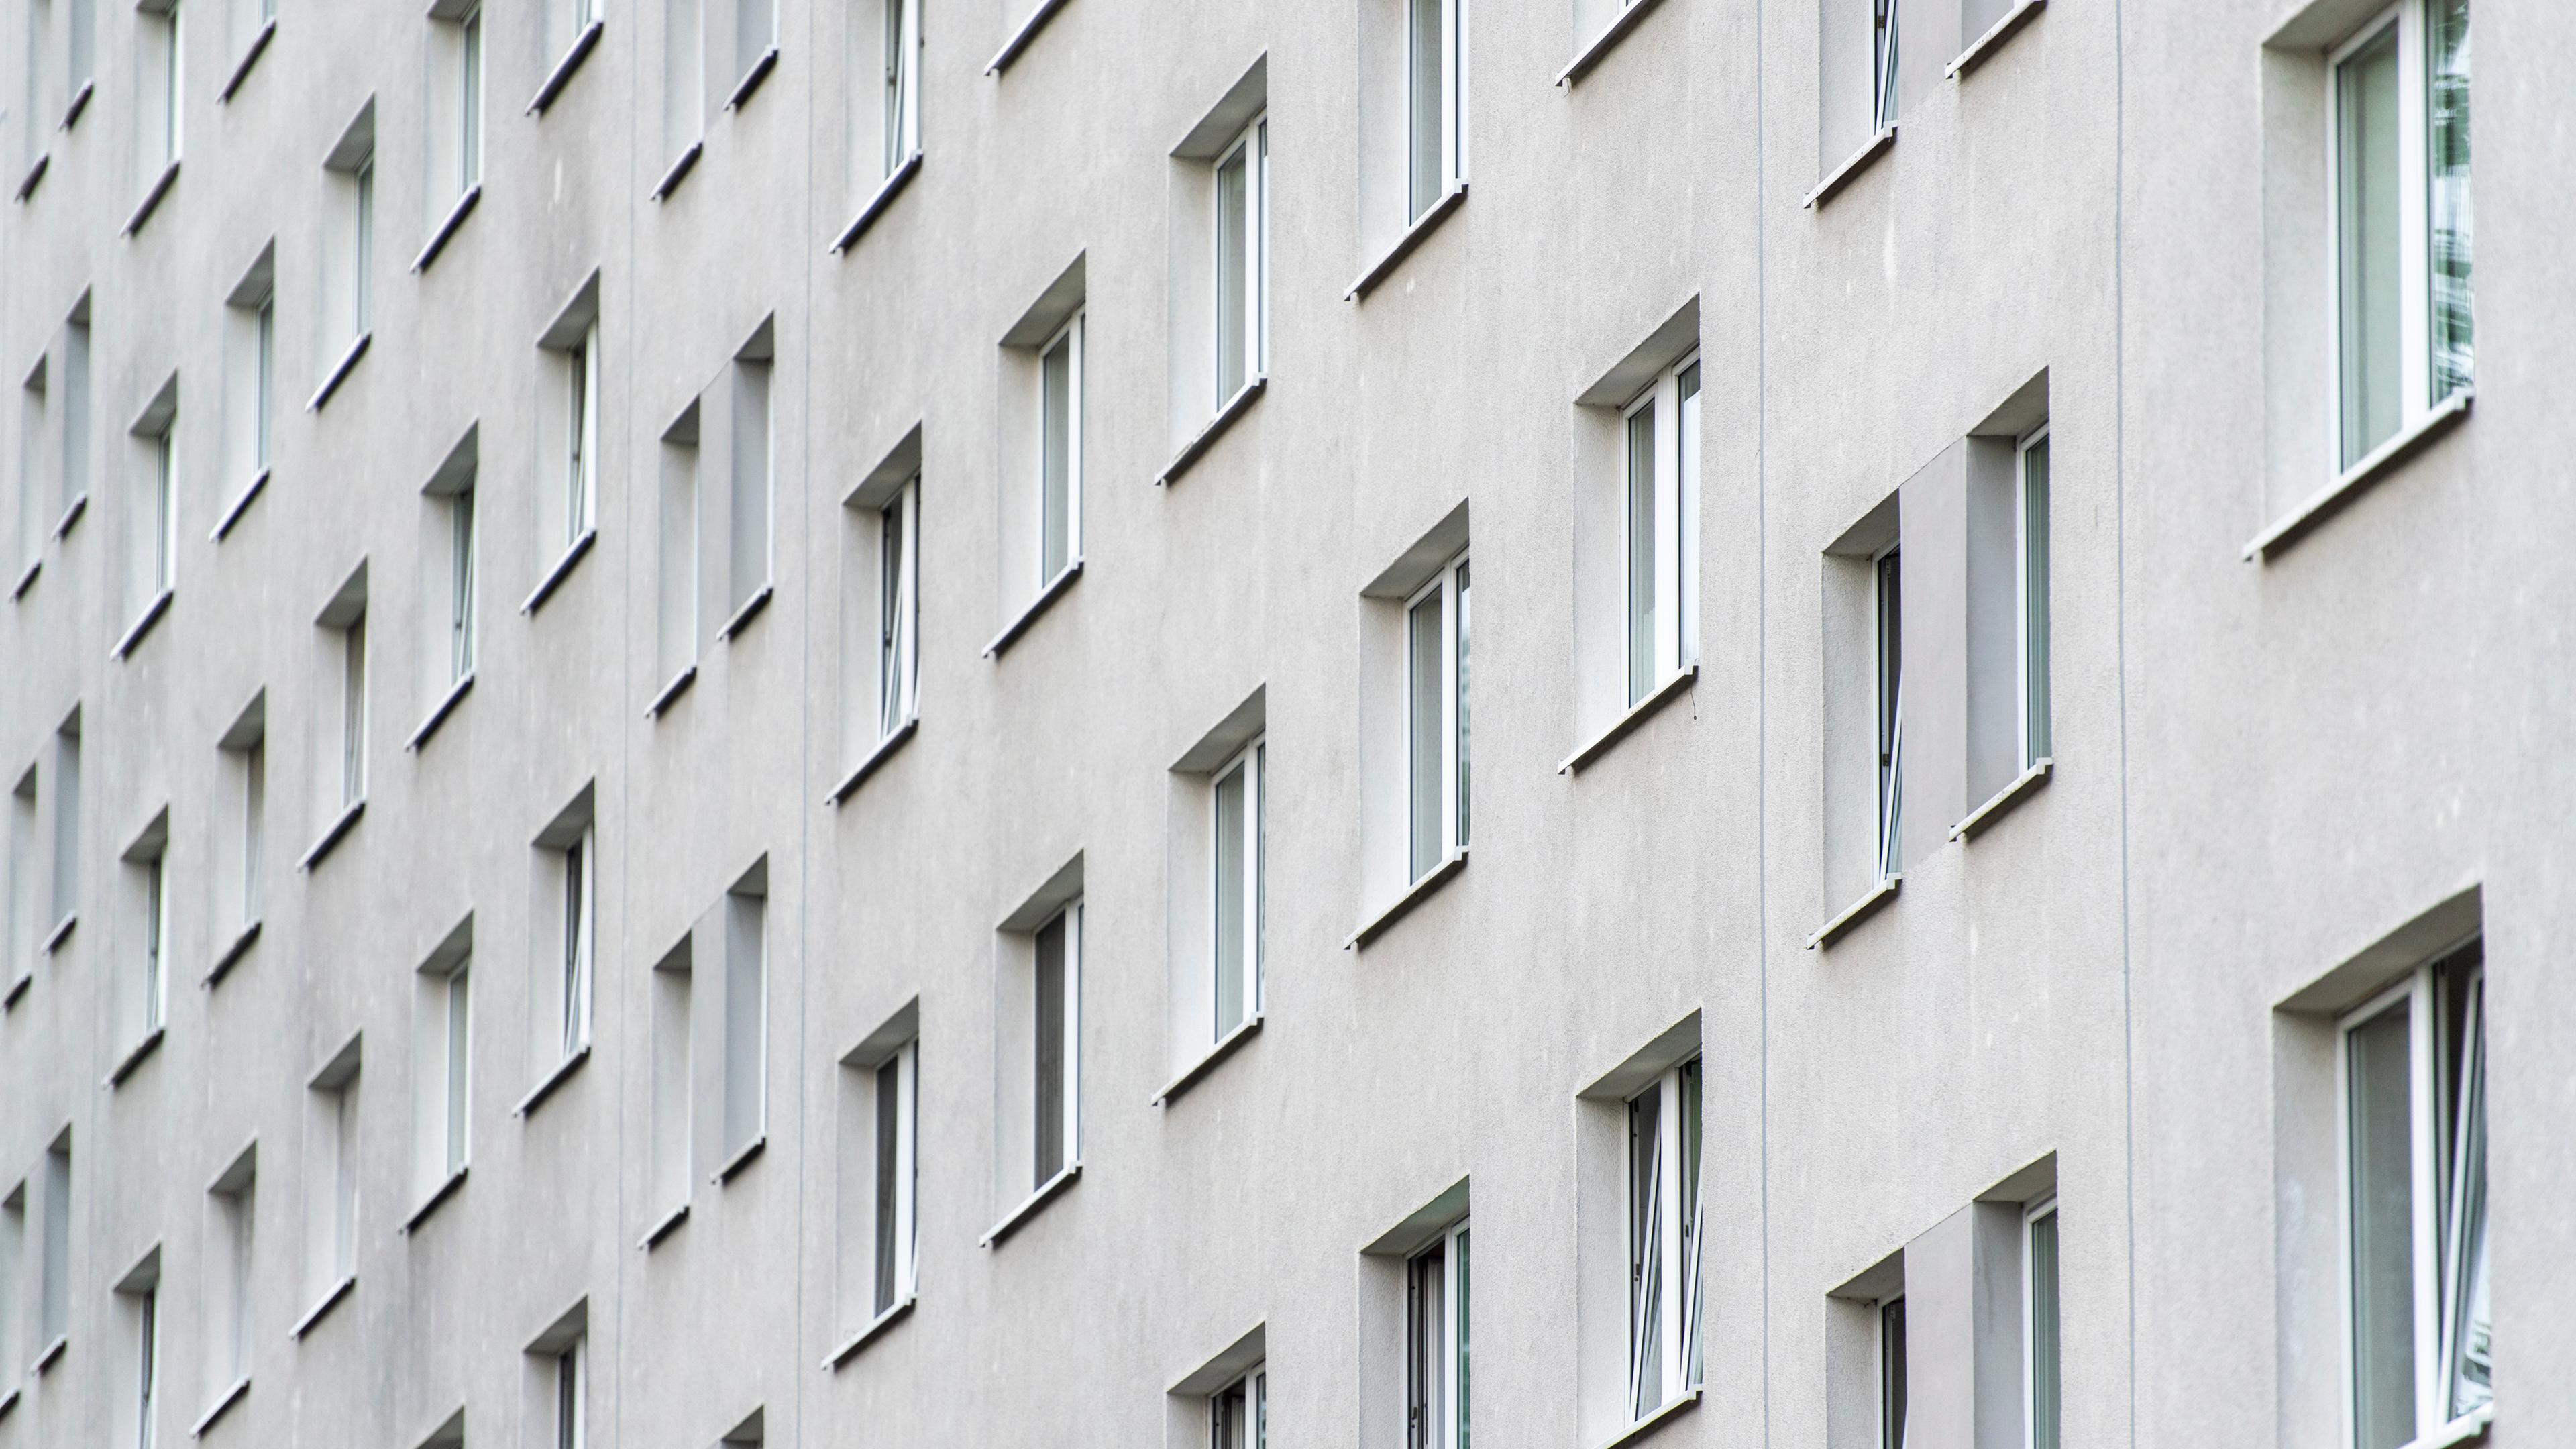 Berlin: Blick auf eine graue Hausfassade mit vielen Fenstern.